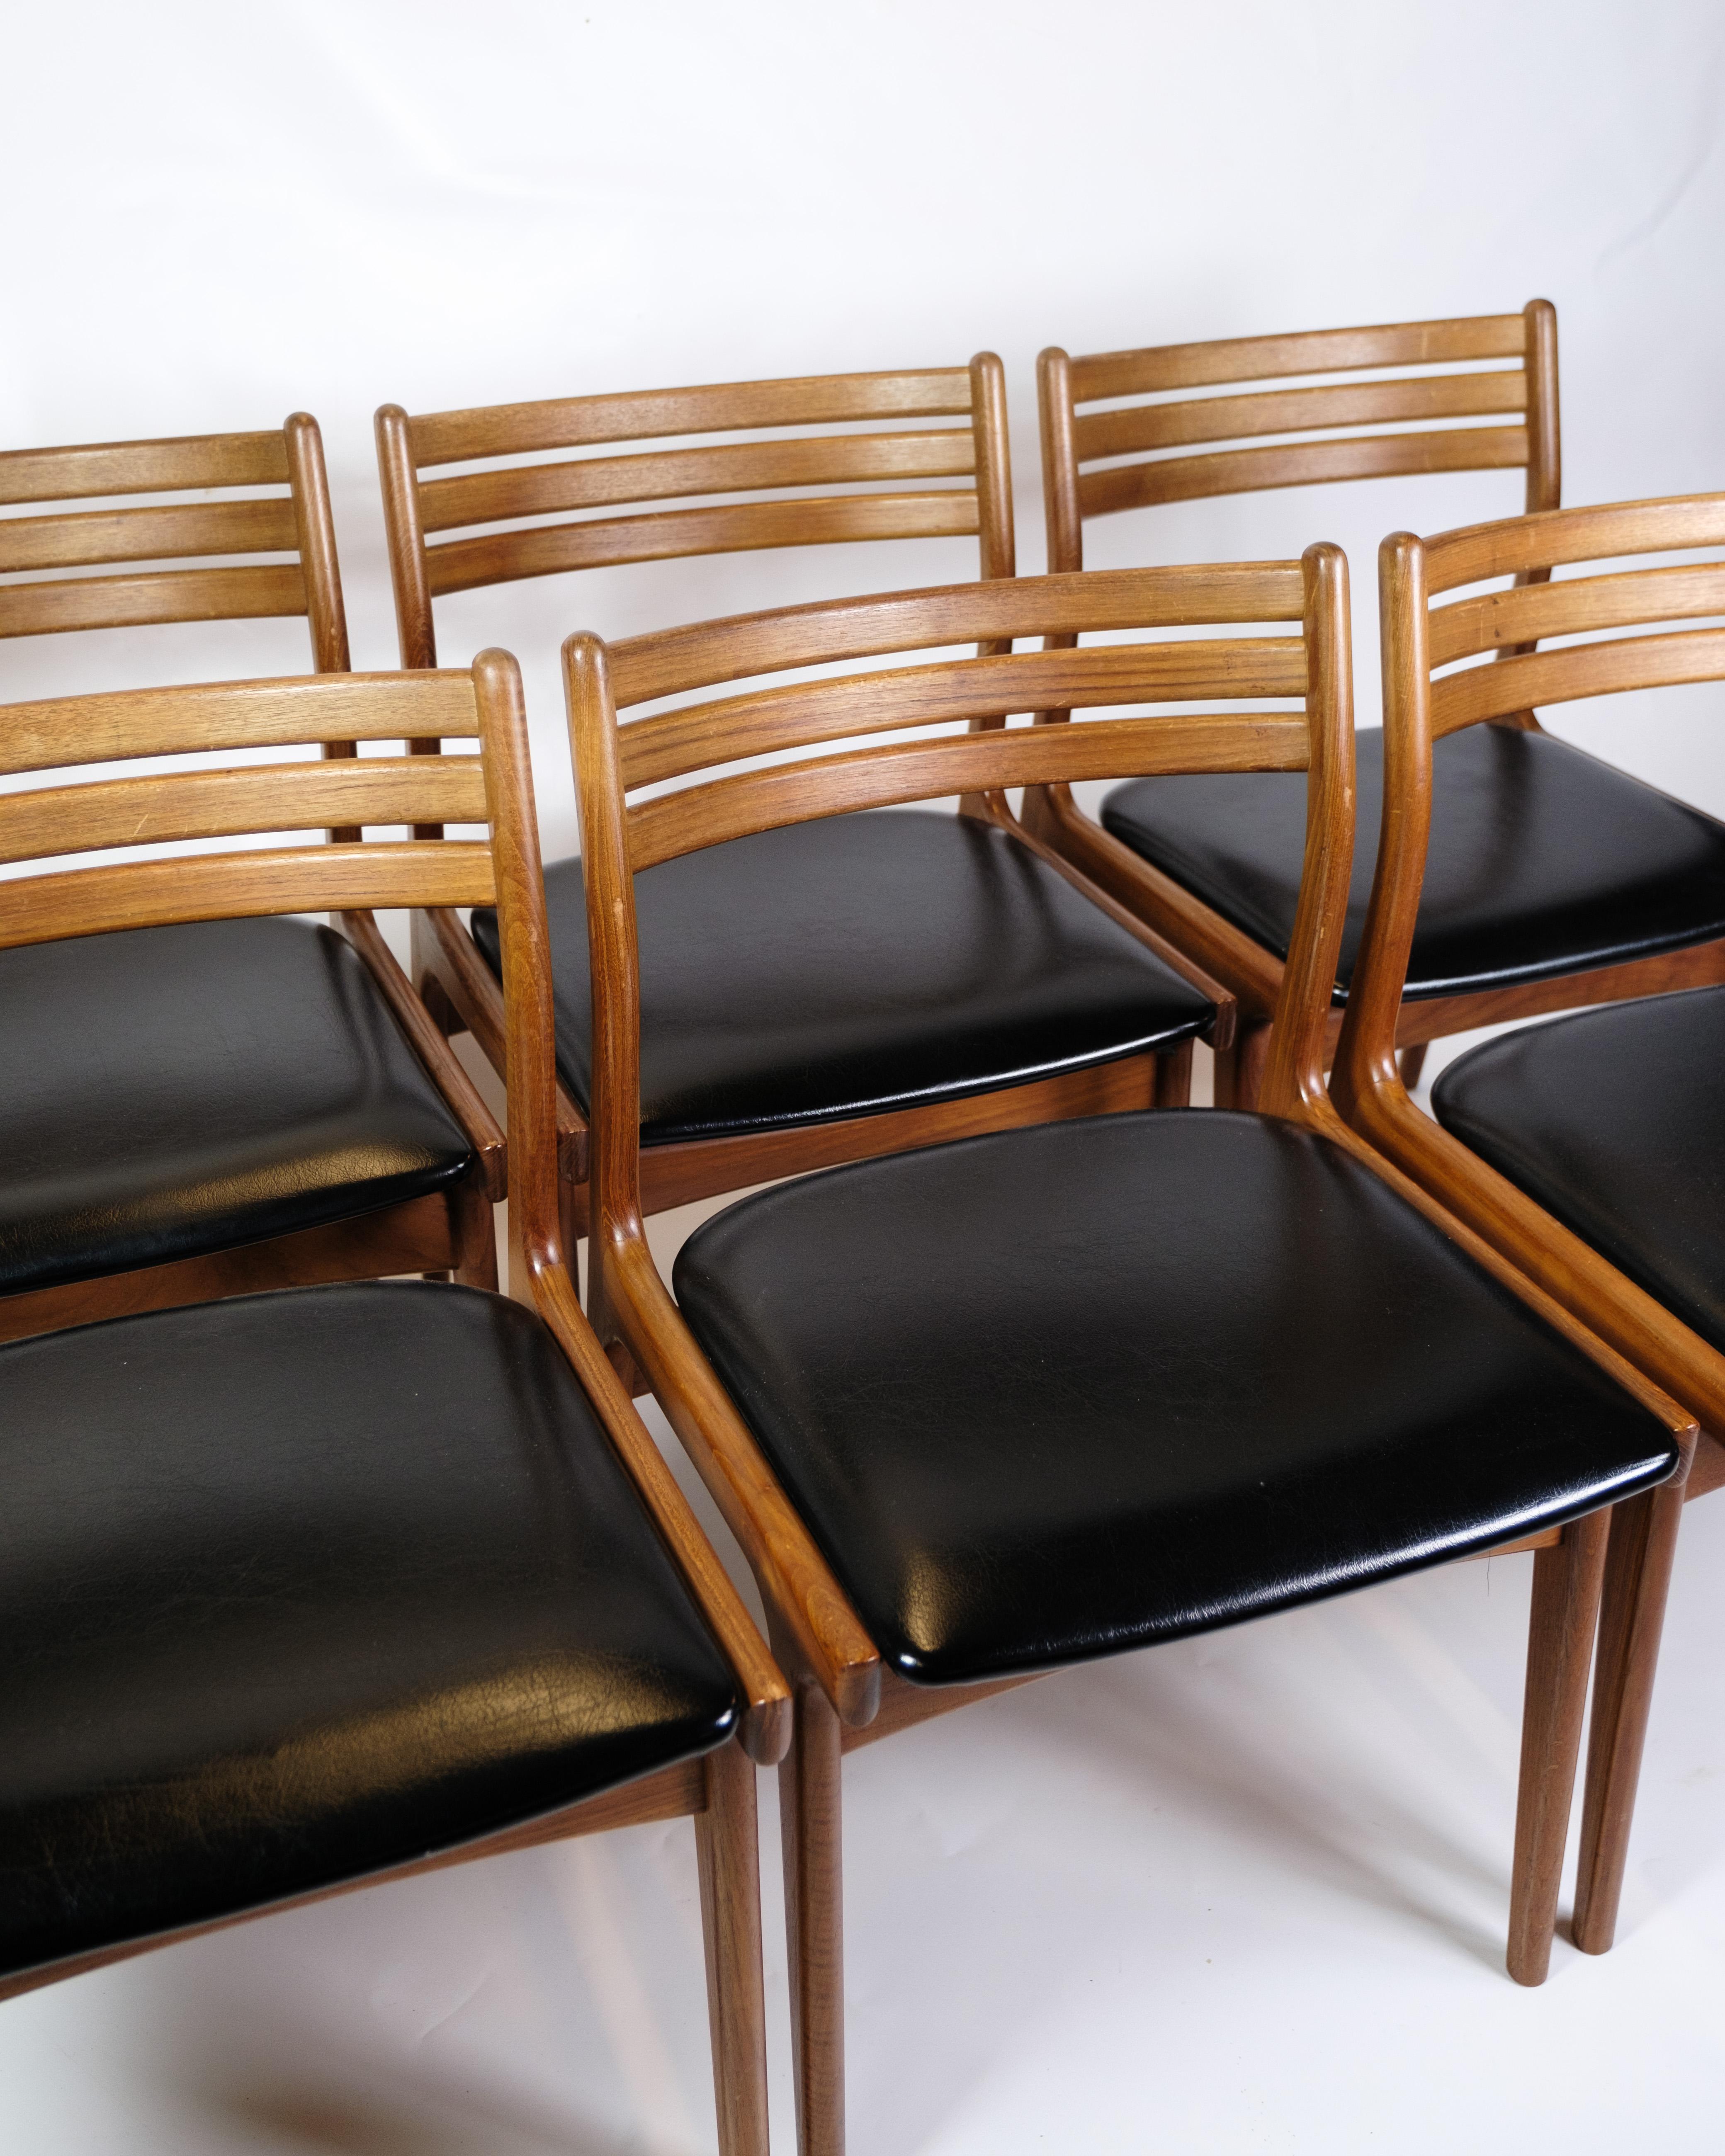 Das Set aus sechs Esszimmerstühlen, Modell U20, ist ein großartiges Beispiel für dänisches Design aus den 1960er Jahren und trägt die Handschrift des bekannten Möbeldesigners Johannes Andersen und der Uldum Møbelfabrik. Diese Stühle sind nicht nur